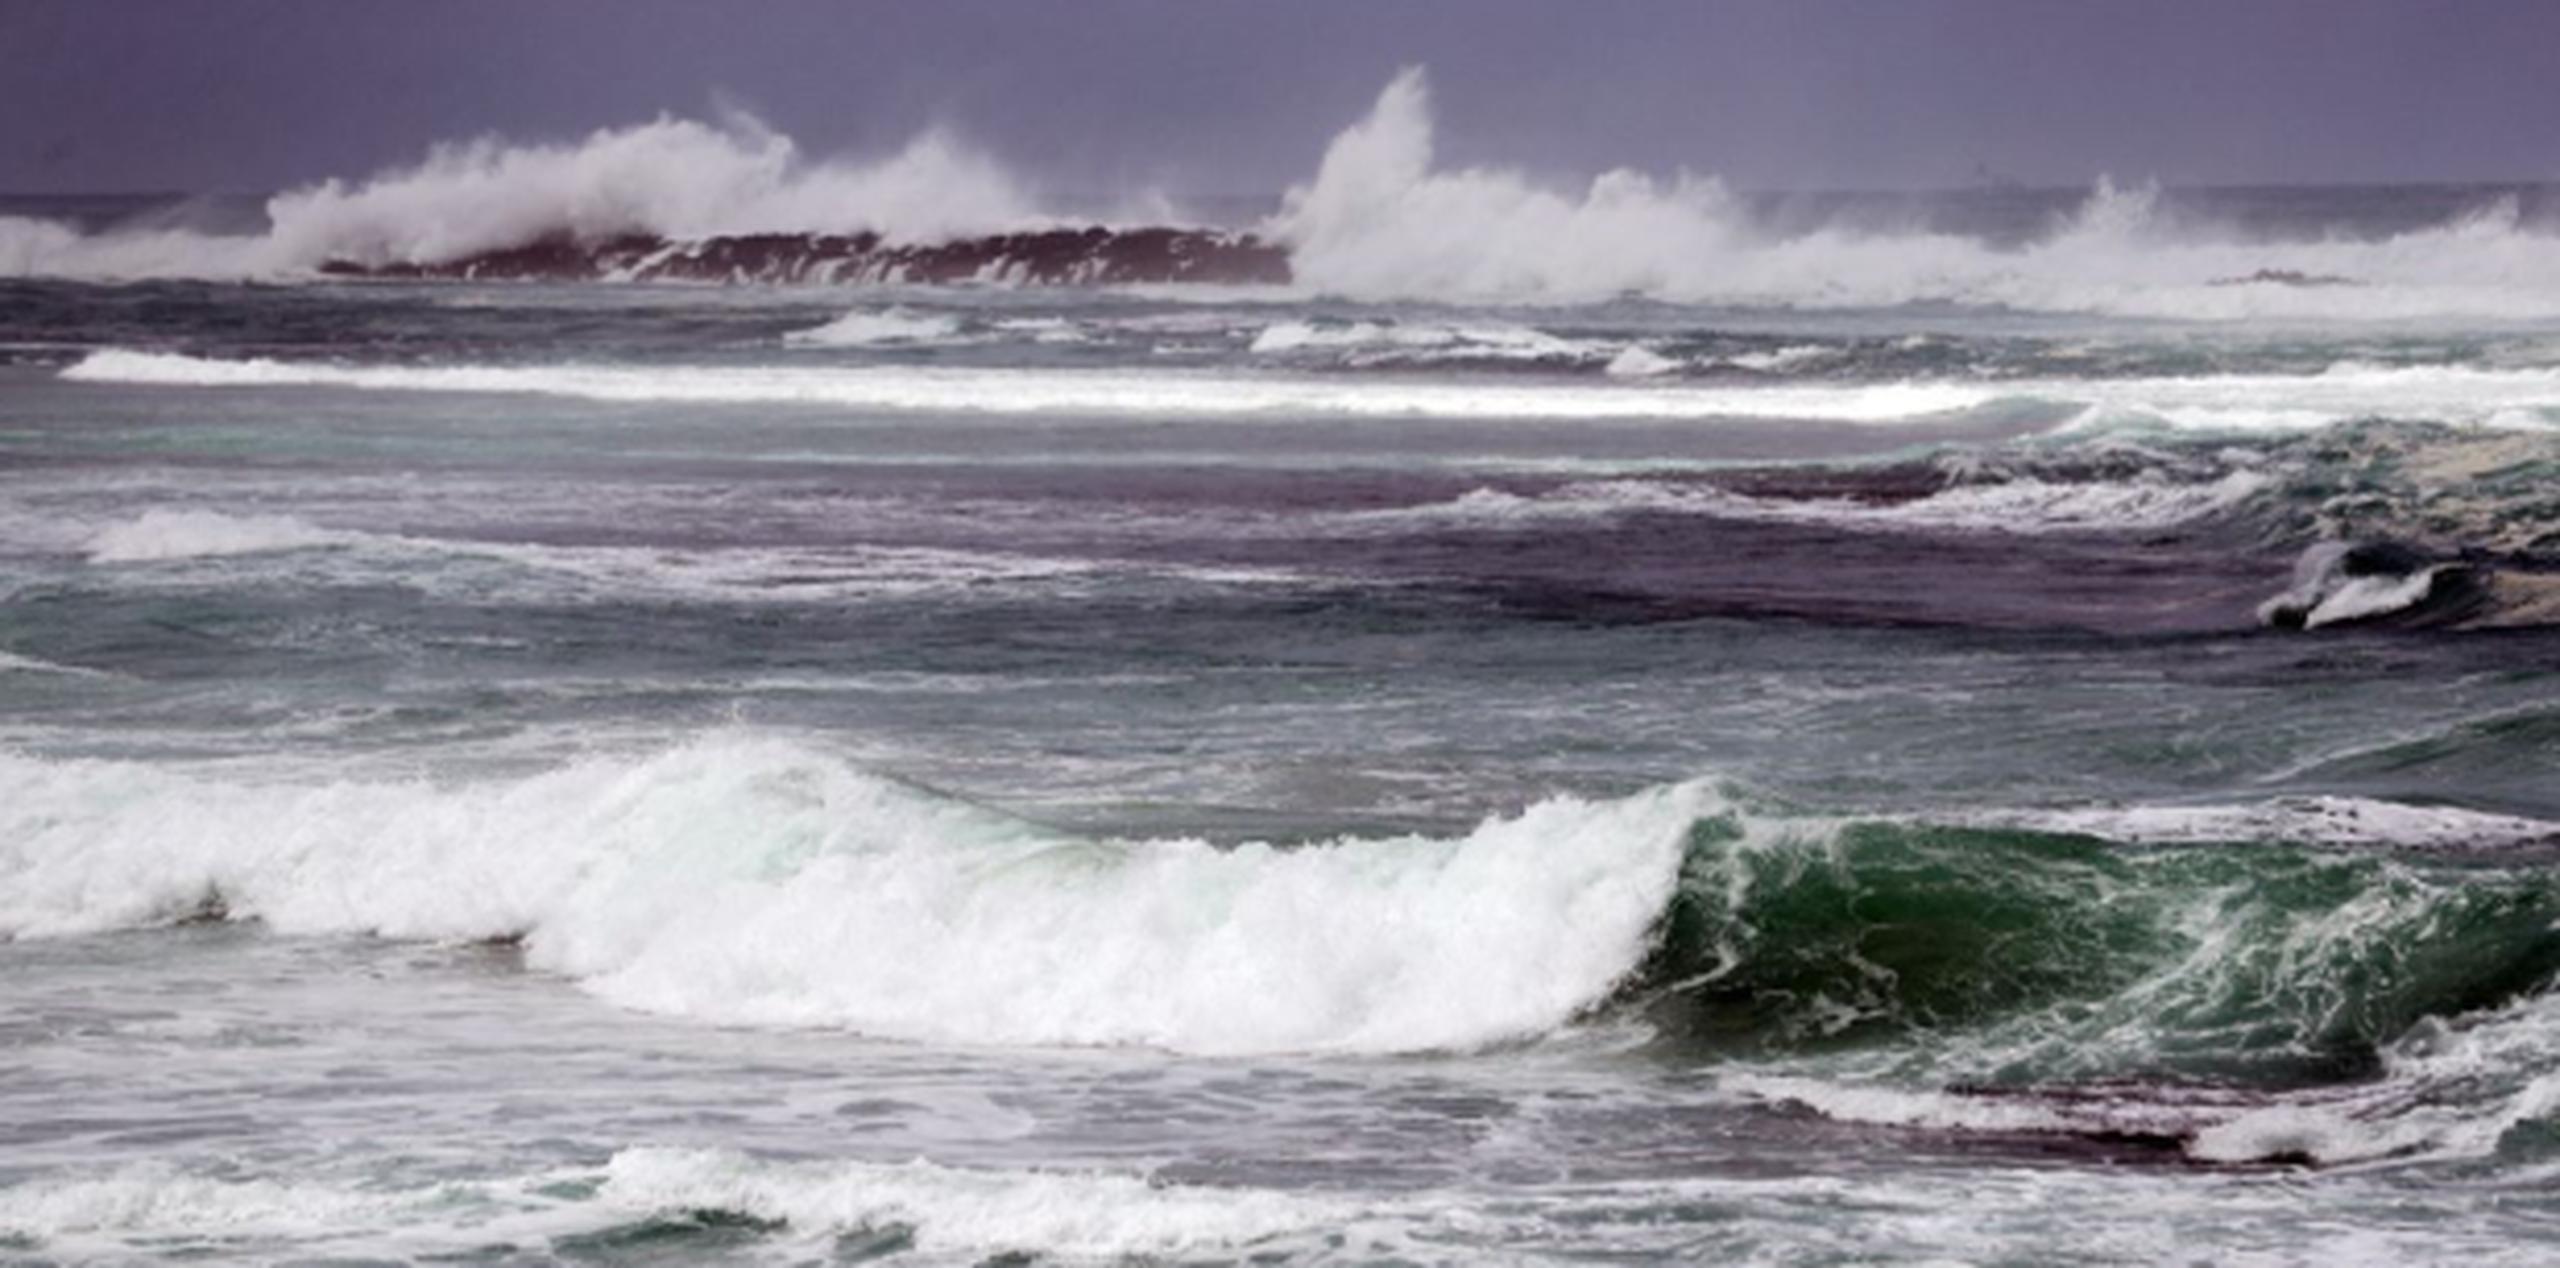 El experto destacó que “las olas rompientes nos preocupan bastante. Pueden llegar hasta los 25 pies. (juan.martinez@gfrmedia.com)